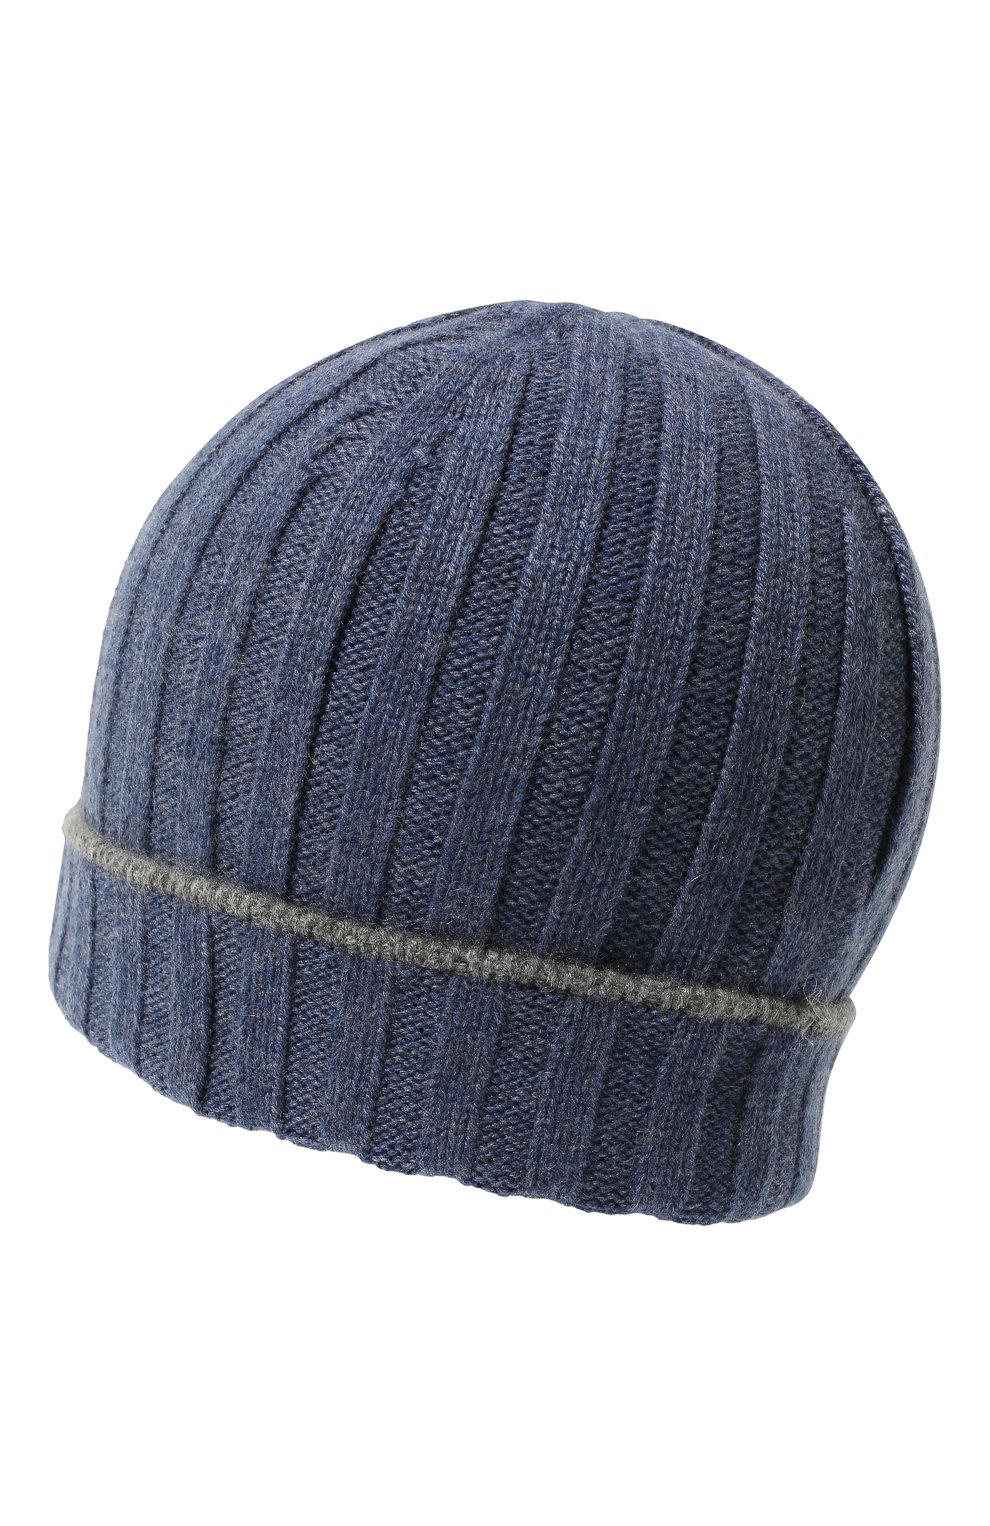 Мужская кашемировая шапка BRUNELLO CUCINELLI синего цвета, арт. M2240900 | Фото 2 (Материал: Текстиль, Кашемир, Шерсть; Кросс-КТ: Трикотаж)